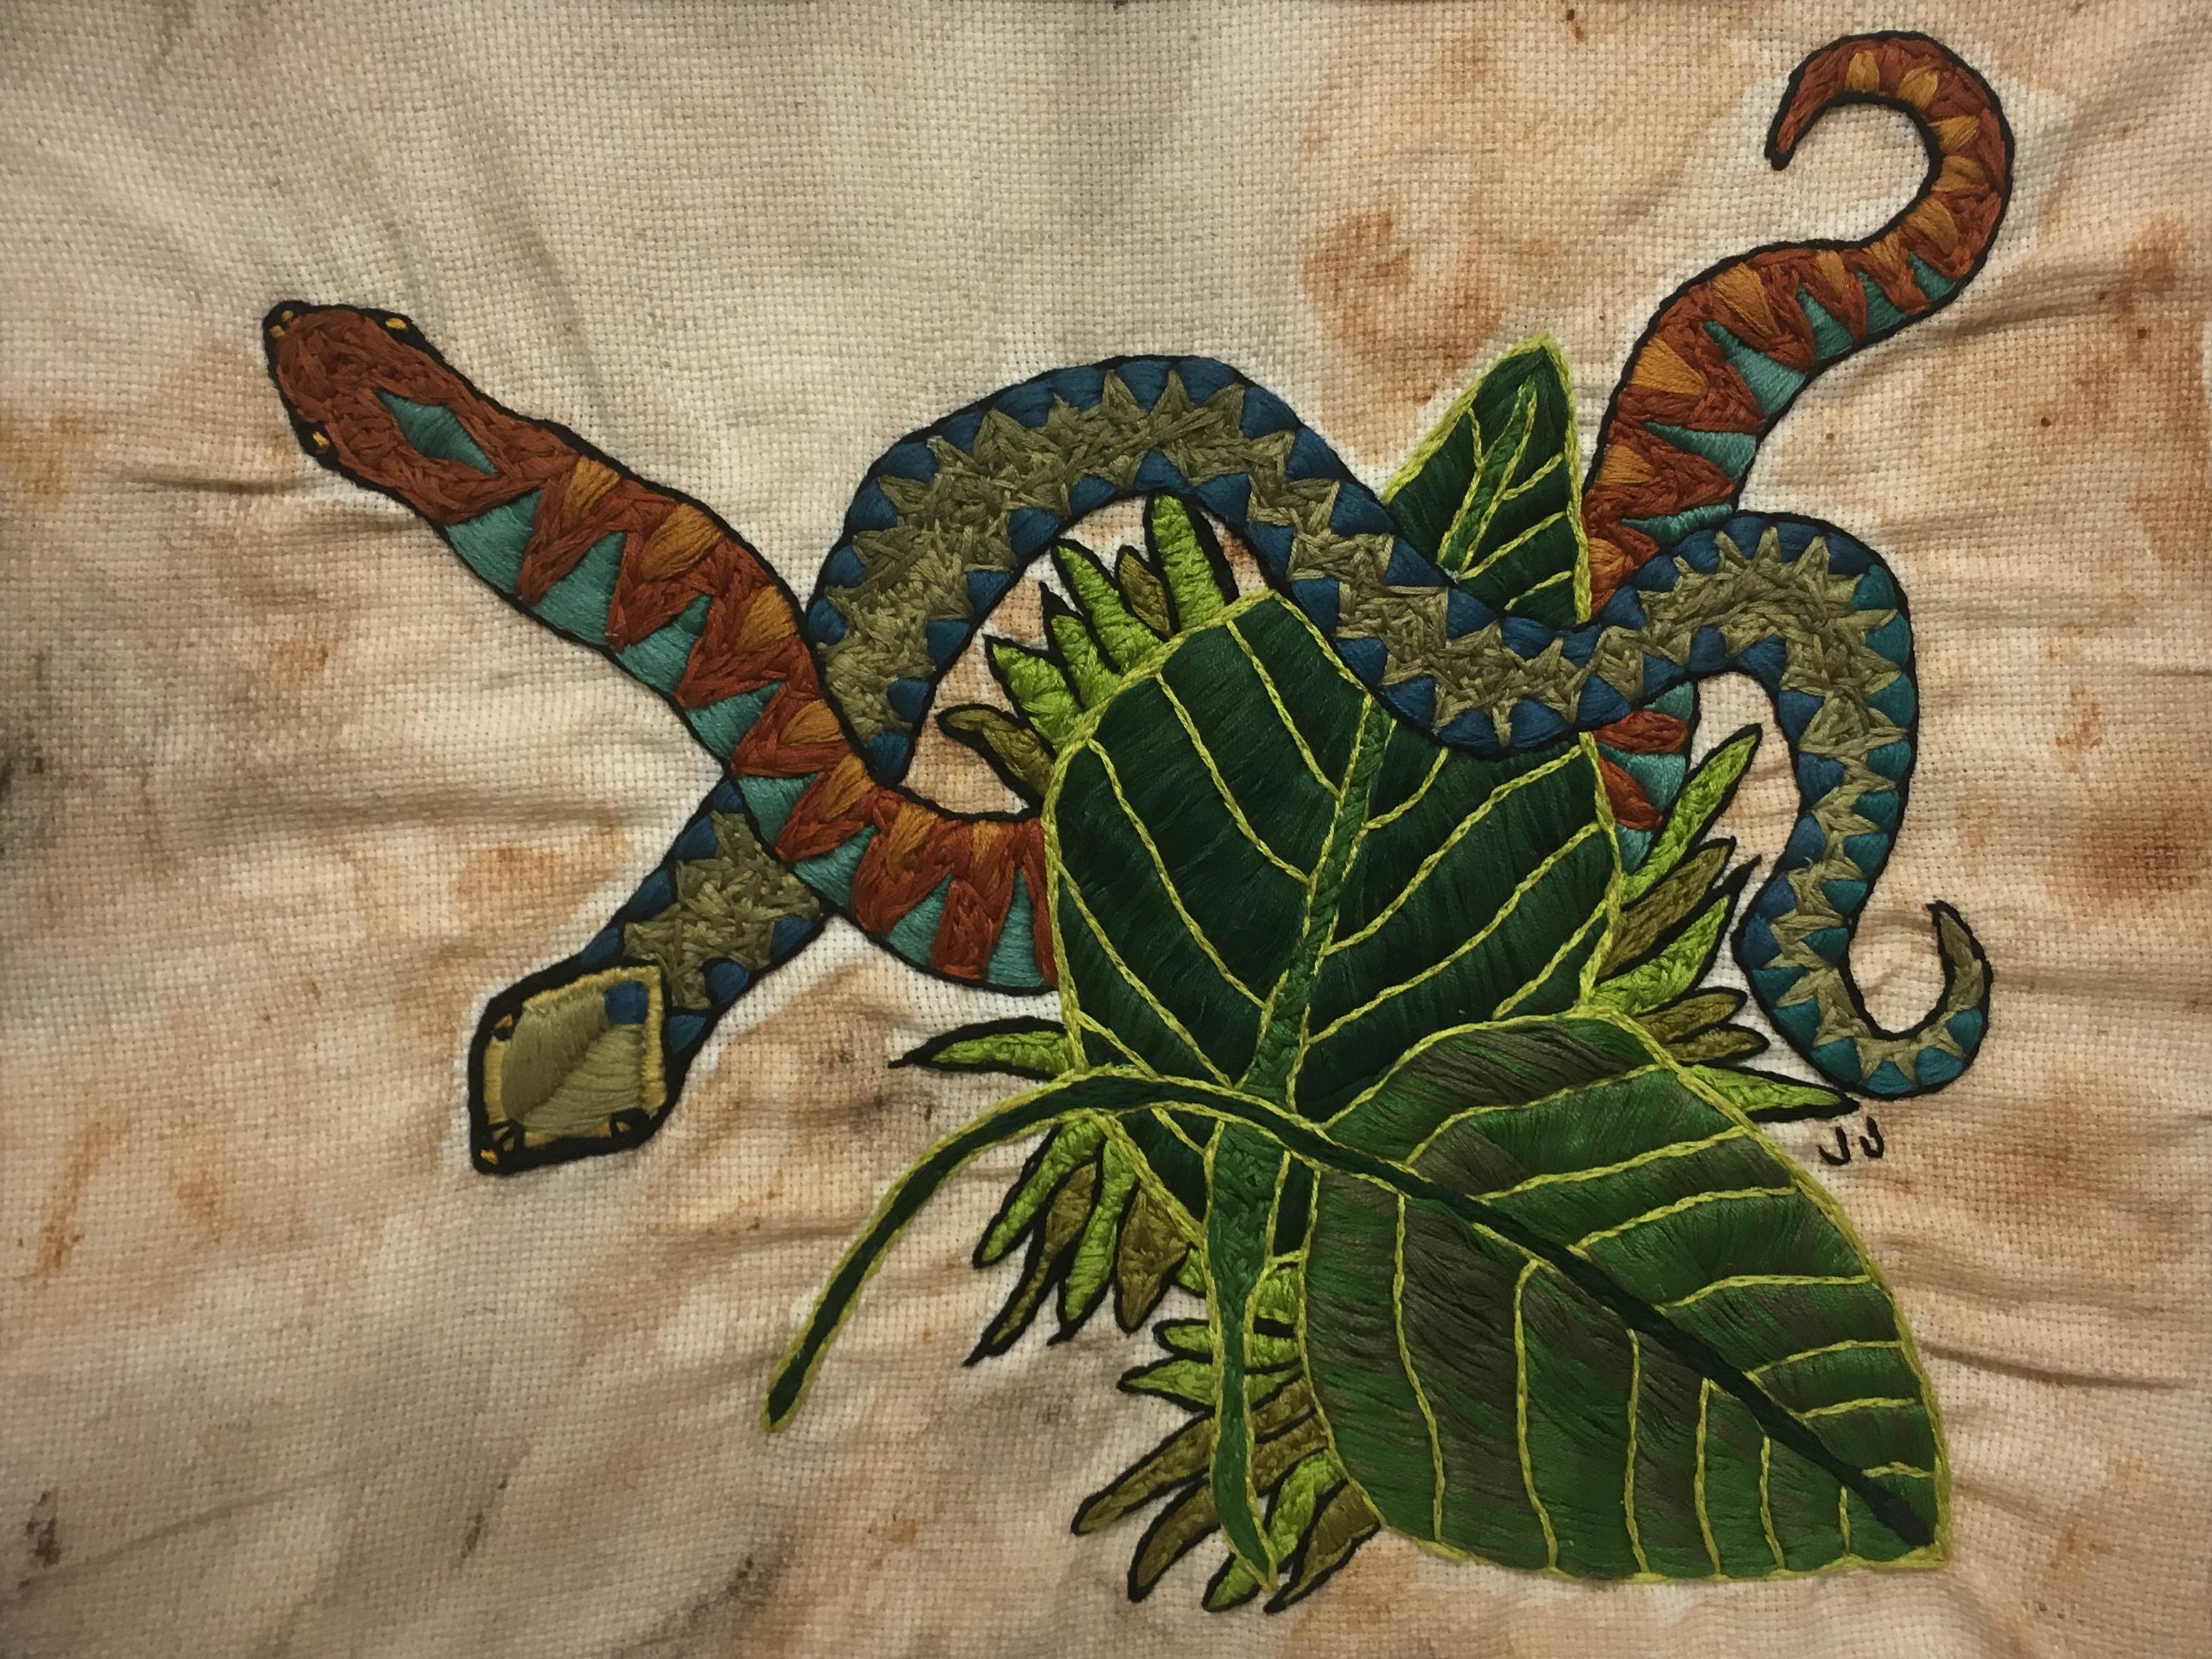 Veiled Knots , 2019, broderie et teinture de tissu sur toile, serpents, feuilles, ton terre